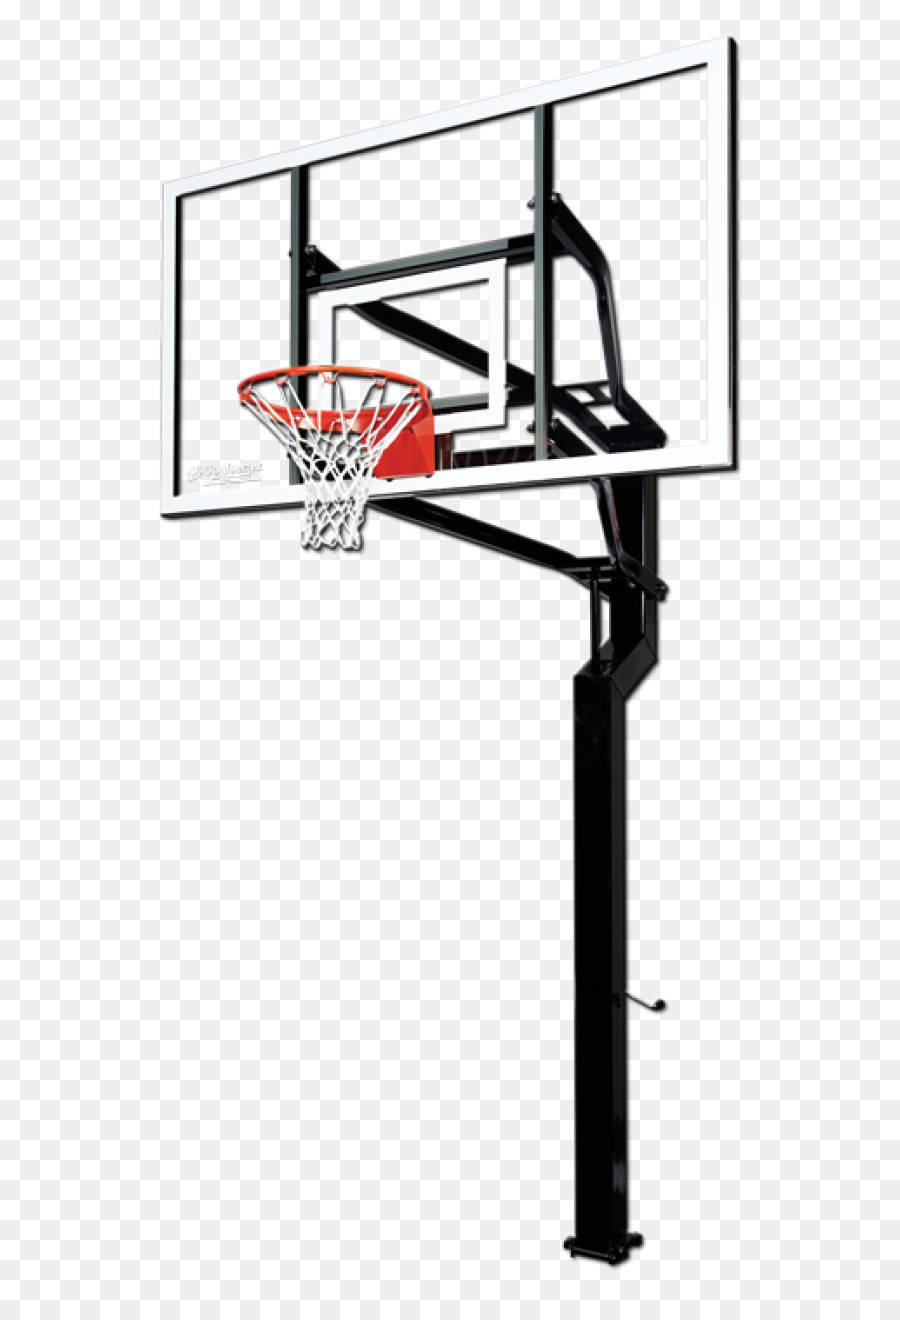 Backboard Basketball Canestro Sport Net - basketball court png download - 600*1304 - Free Transparent Backboard png Download.